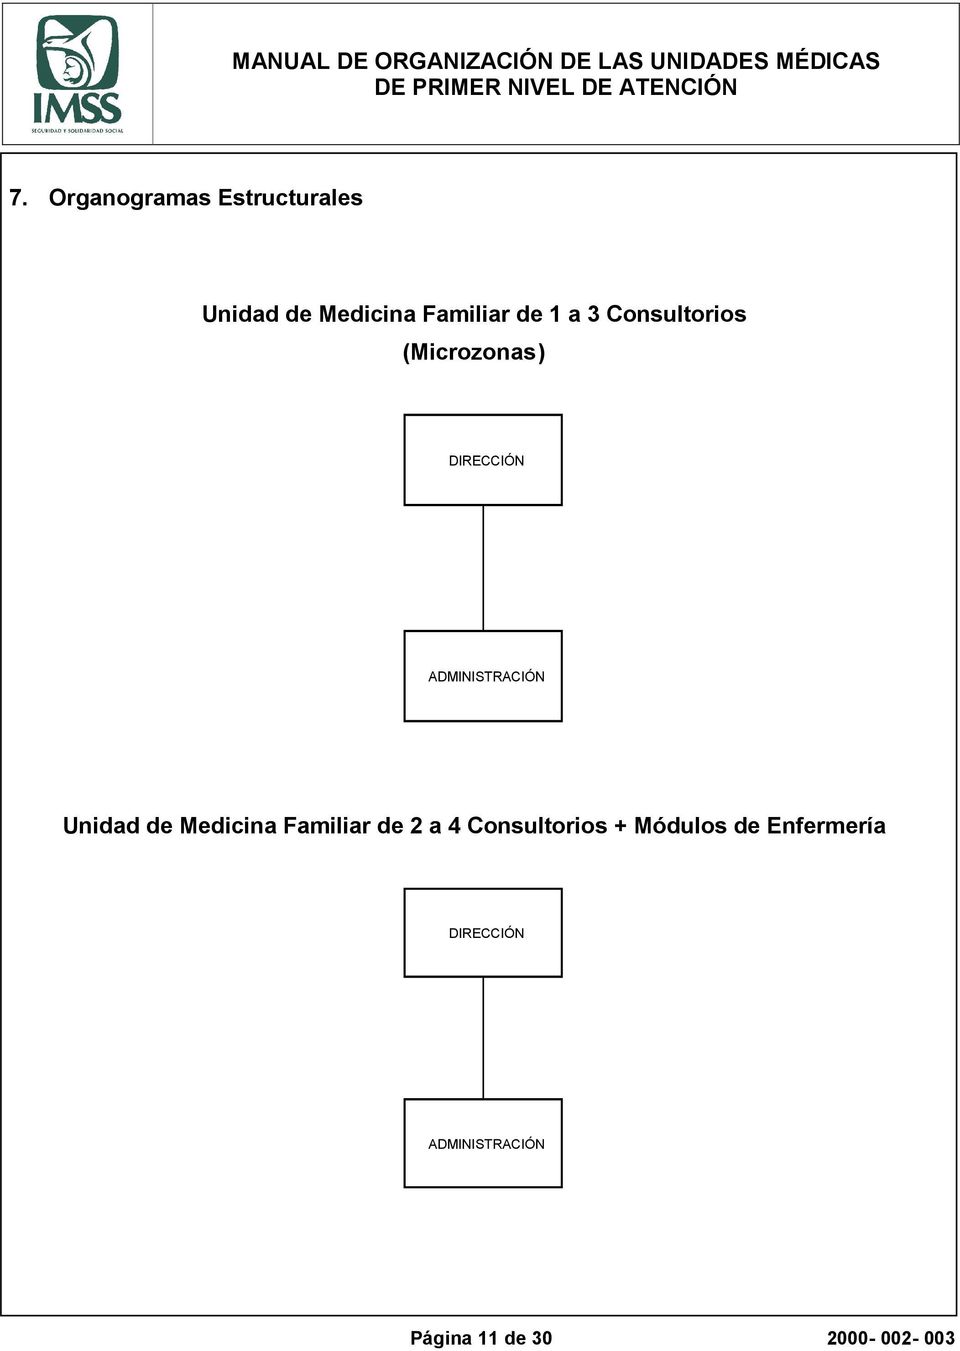 Unidad de Medicina Familiar de 2 a 4 Consultorios + Módulos